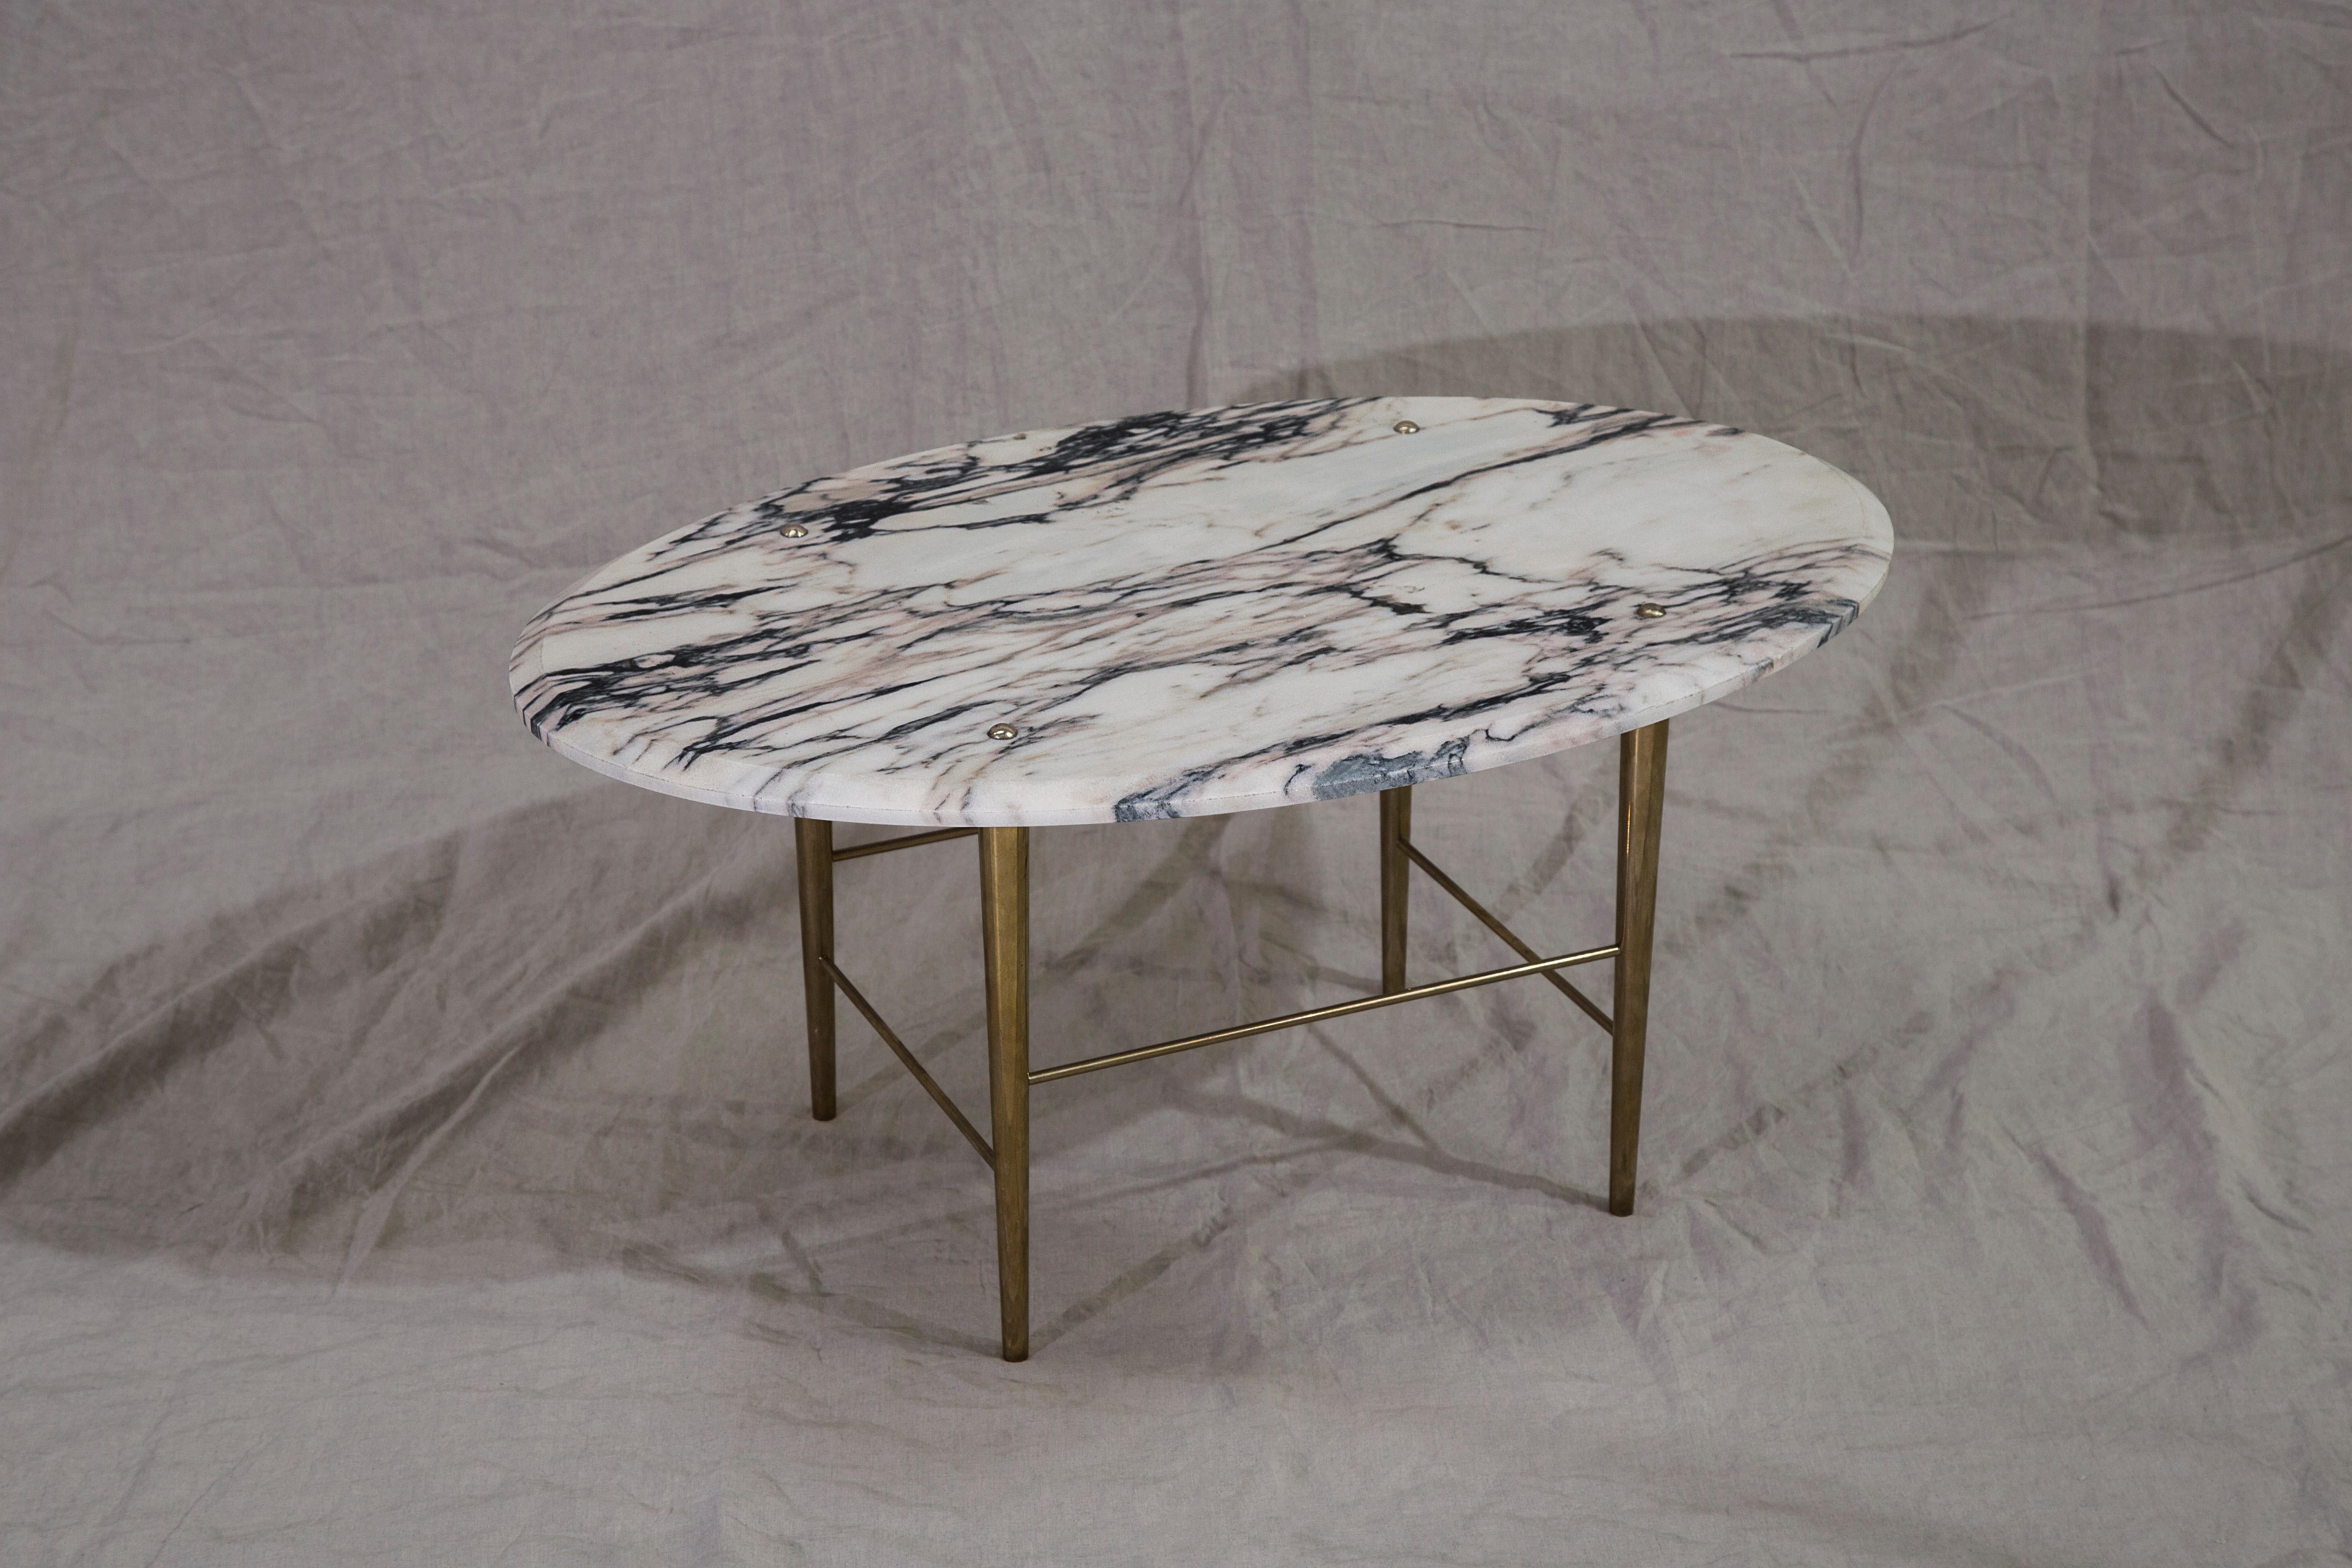 Table basse en marbre portugais et laiton poli, fabriquée à la main dans le nord de l'Angleterre.

Dimensions : 1000 mm (L) x 640 mm (L) x 400 mm (H)

Dimensions et finitions sur mesure disponibles.